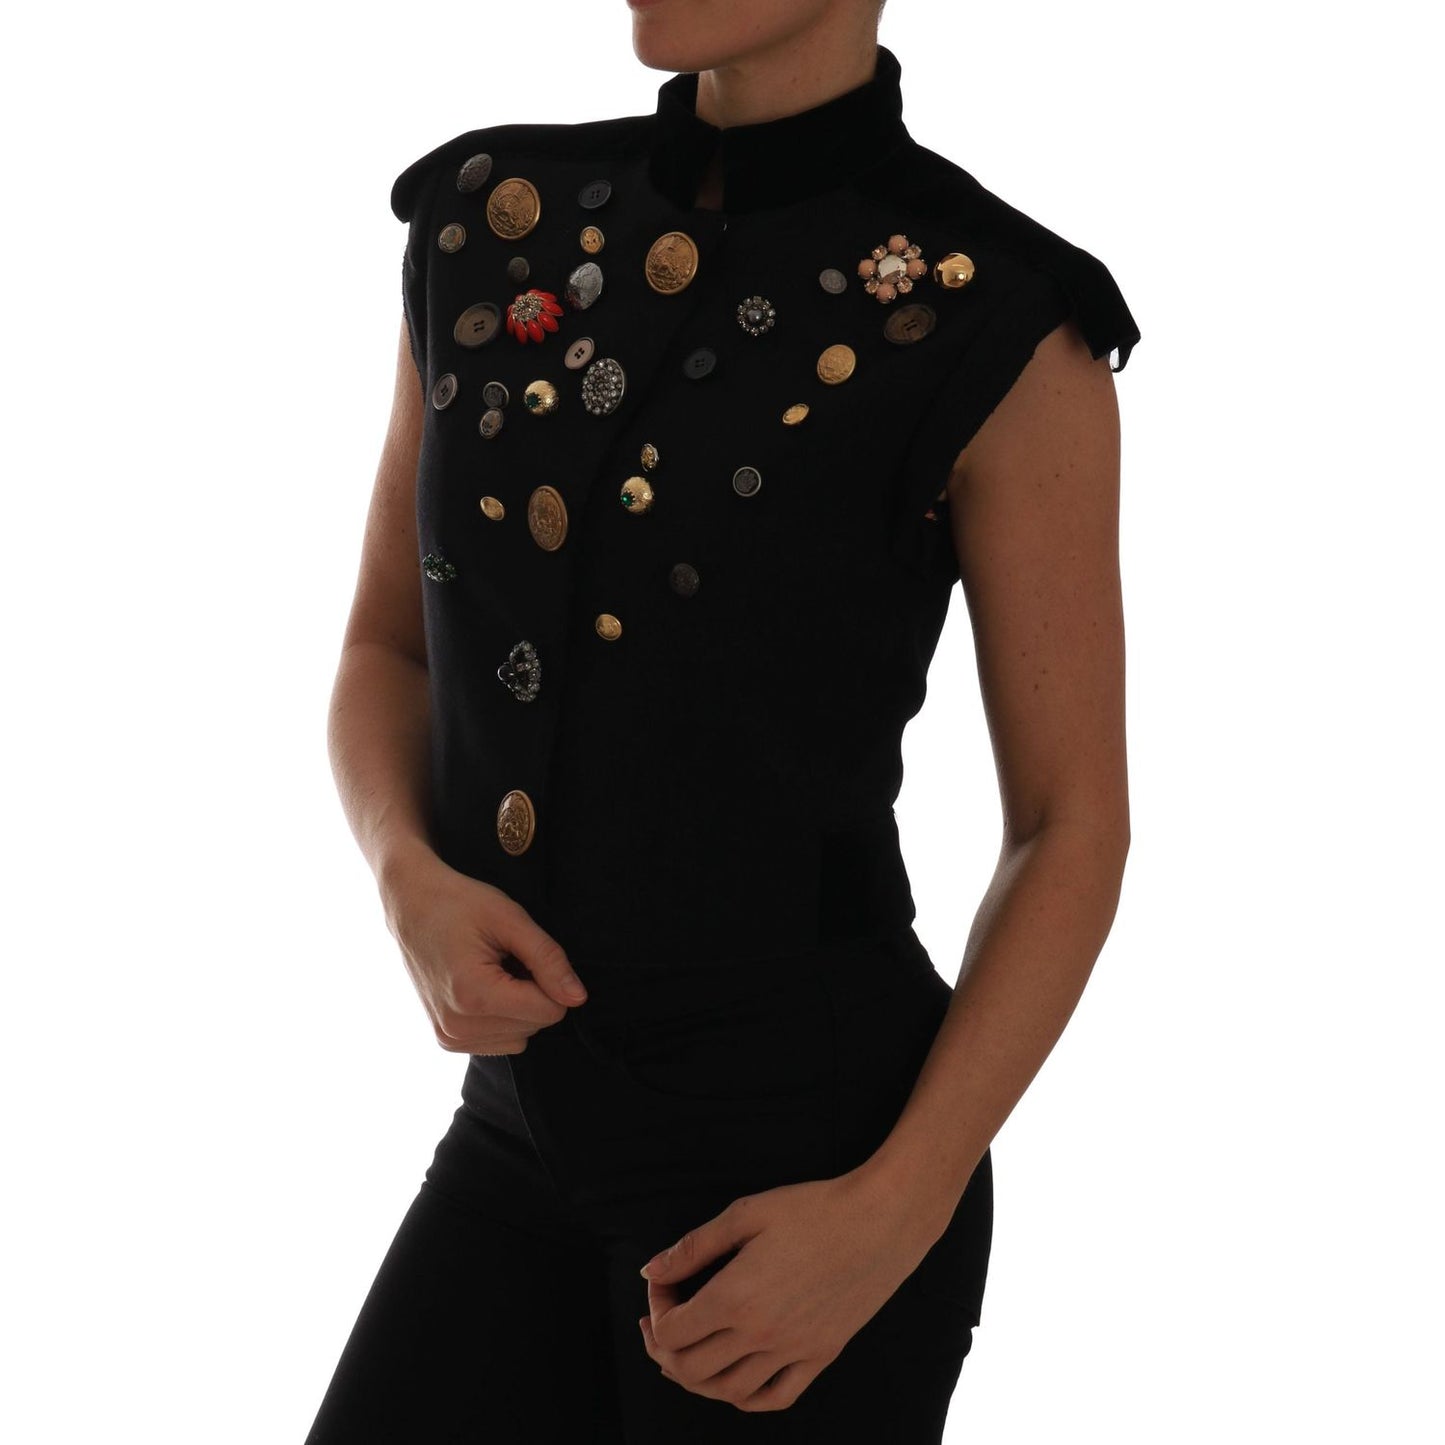 Dolce & Gabbana Embellished Black Military Style Vest Coats & Jackets black-embellished-floral-military-jacket-vest